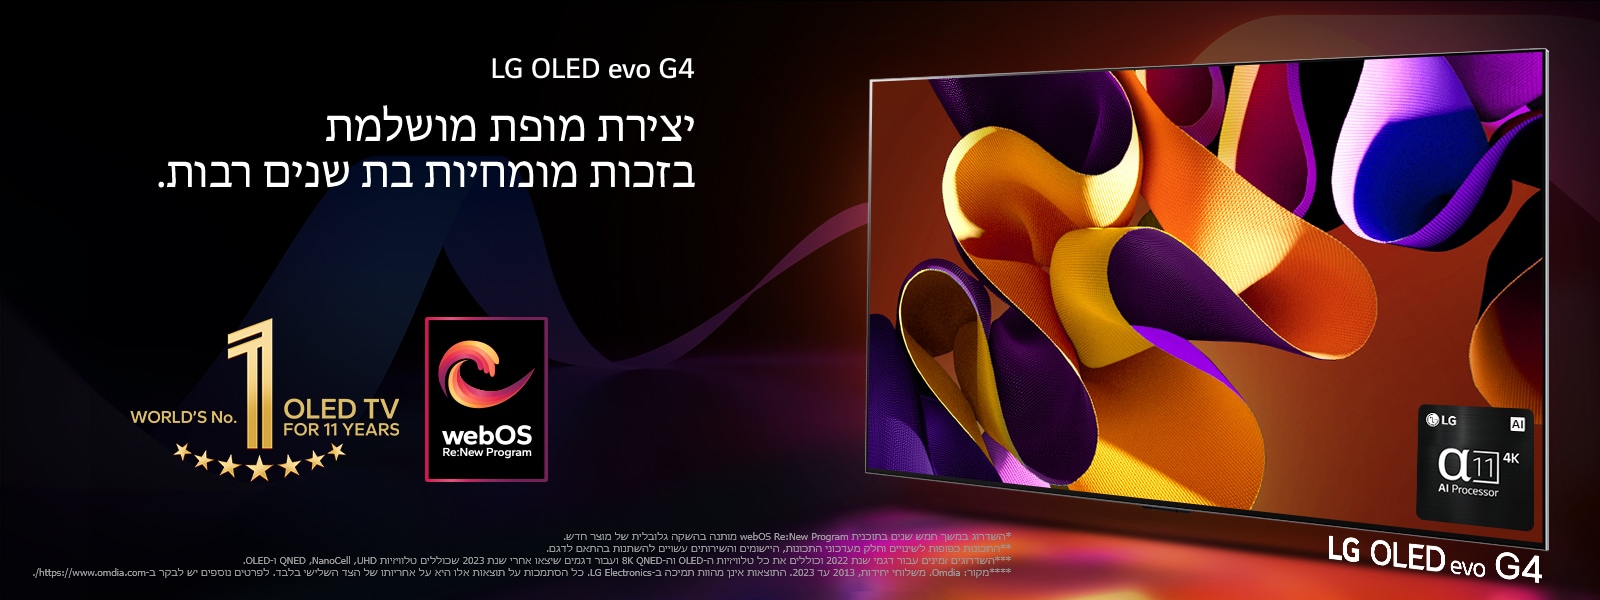 טלוויזיית LG OLED evo G4 עם גרפיקה מופשטת וצבעונית על המסך על רקע שחור עם נגיעות צבע עדינות. אור מקרין מהמסך ומטיל צללים צבעוניים. מעבד הבינה המלאכותית אלפא 11 4K נמצא בפינה הימנית התחתונה של מסך הטלוויזיה. הסמל של "טלוויזיית ה-OLED מספר 1 במשך 11 שנים ברציפות" והלוגו של webOS Re:New Program מופיעים בתמונה. מוצג כתב ויתור: "השדרוג במשך חמש שנים בתוכנית webOS Re:New Program מותנה בהשקה גלובלית של מוצר חדש."  "התכונות כפופות לשינויים וחלק מעדכוני התכונות, היישומים והשירותים עשויים להשתנות בהתאם לדגם."  "השדרוגים זמינים עבור דגמי שנת 2022 וכוללים את כל טלוויזיות ה-OLED וה-8K QNED ועבור דגמים שיצאו אחרי שנת 2023 שכוללים טלוויזיות UHD, ‏NanoCell, ‏QNED ו-OLED." "מקור: Omdia. משלוחי יחידות, 2013 עד 2023. התוצאות אינן מהוות תמיכה ב-LG Electronics. כל הסתמכות על תוצאות אלו היא על אחריותו של הצד השלישי בלבד. לפרטים נוספים יש לבקר ב-https://www.omdia.com/."